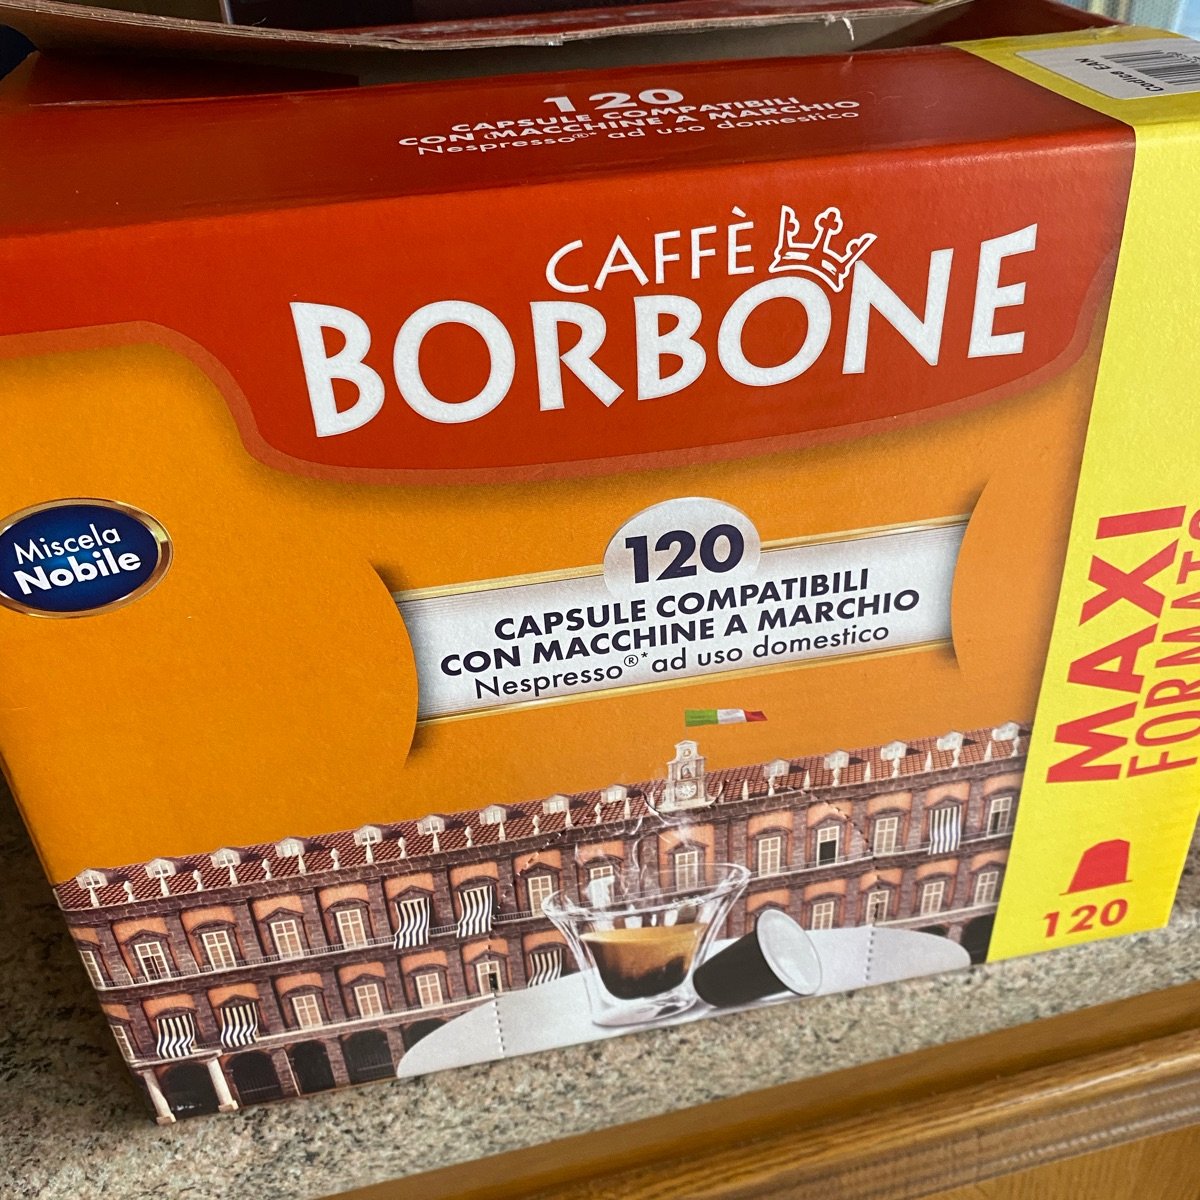 Caffè Borbone Capsule compatibili Nespresso - Miscela Nobile Review |  abillion